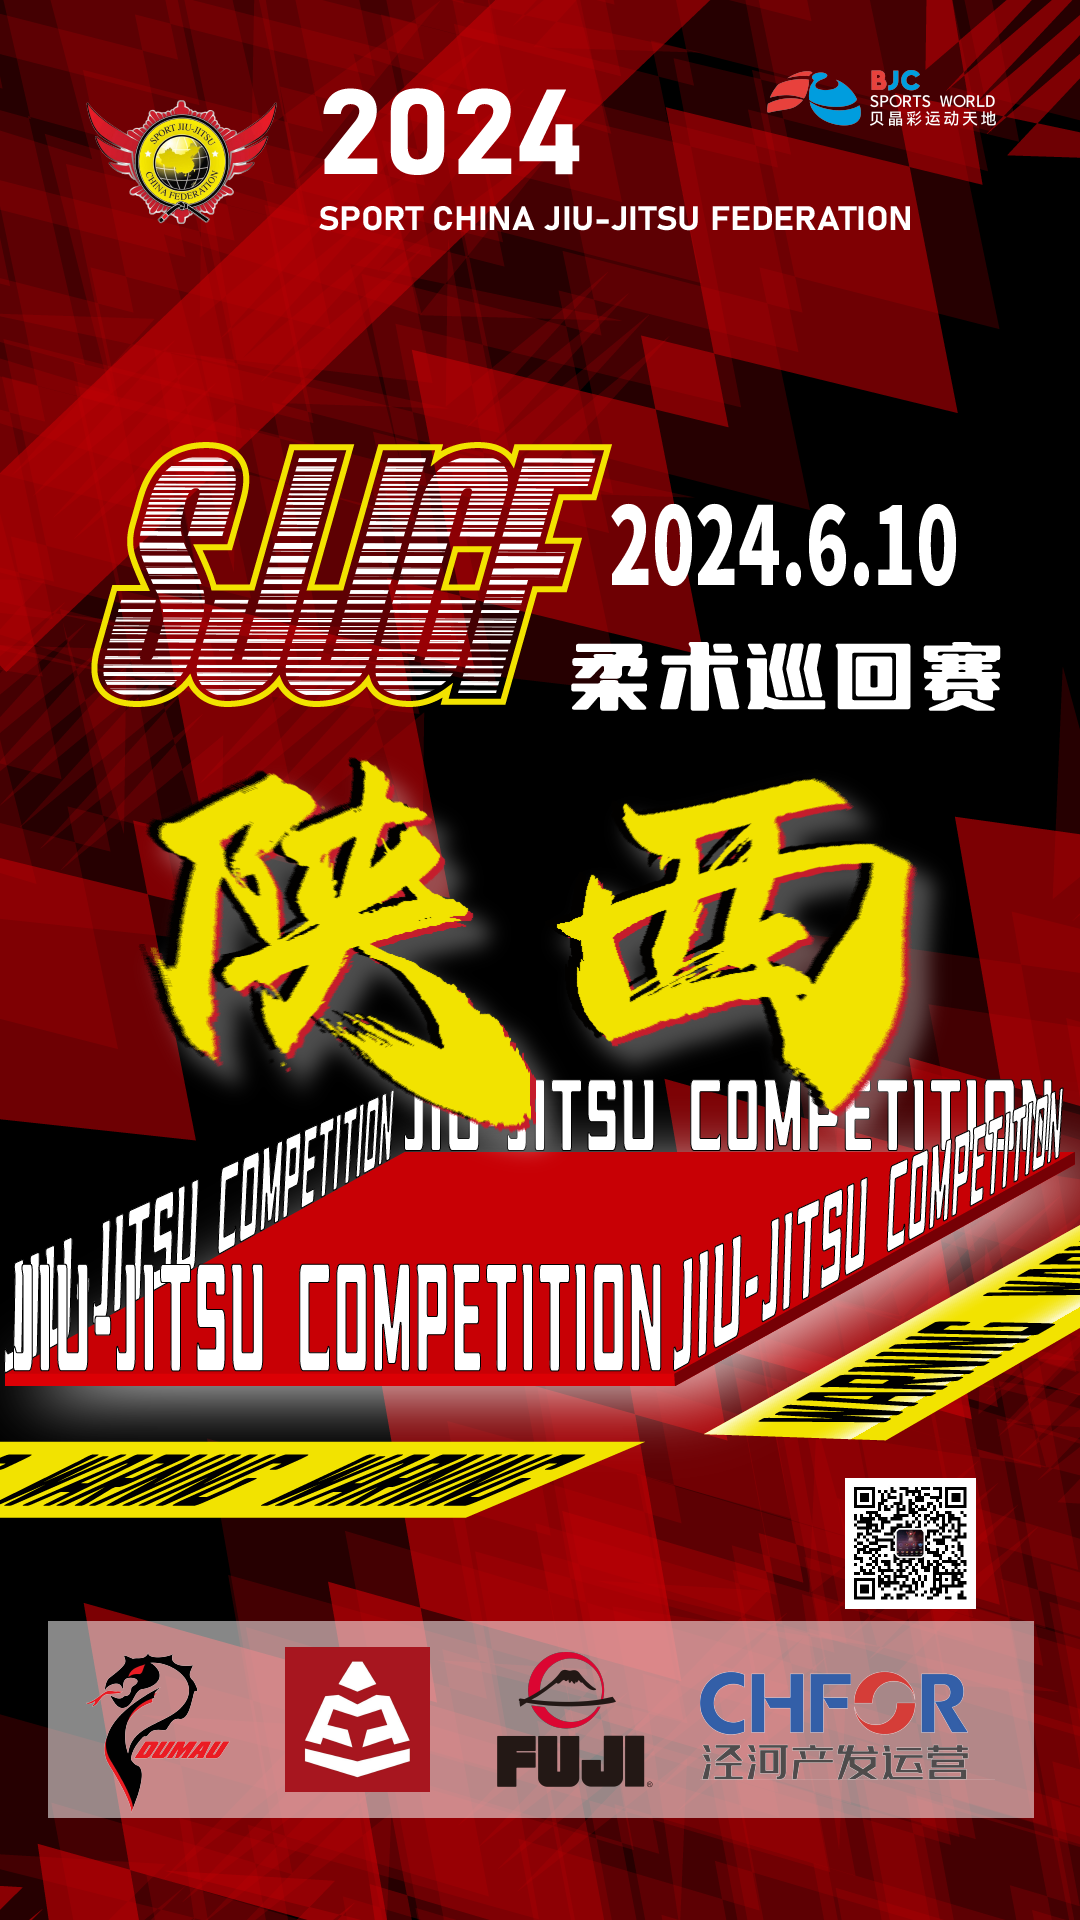 sjjcf shanxi no-gi championship 2024. (no-gi event)